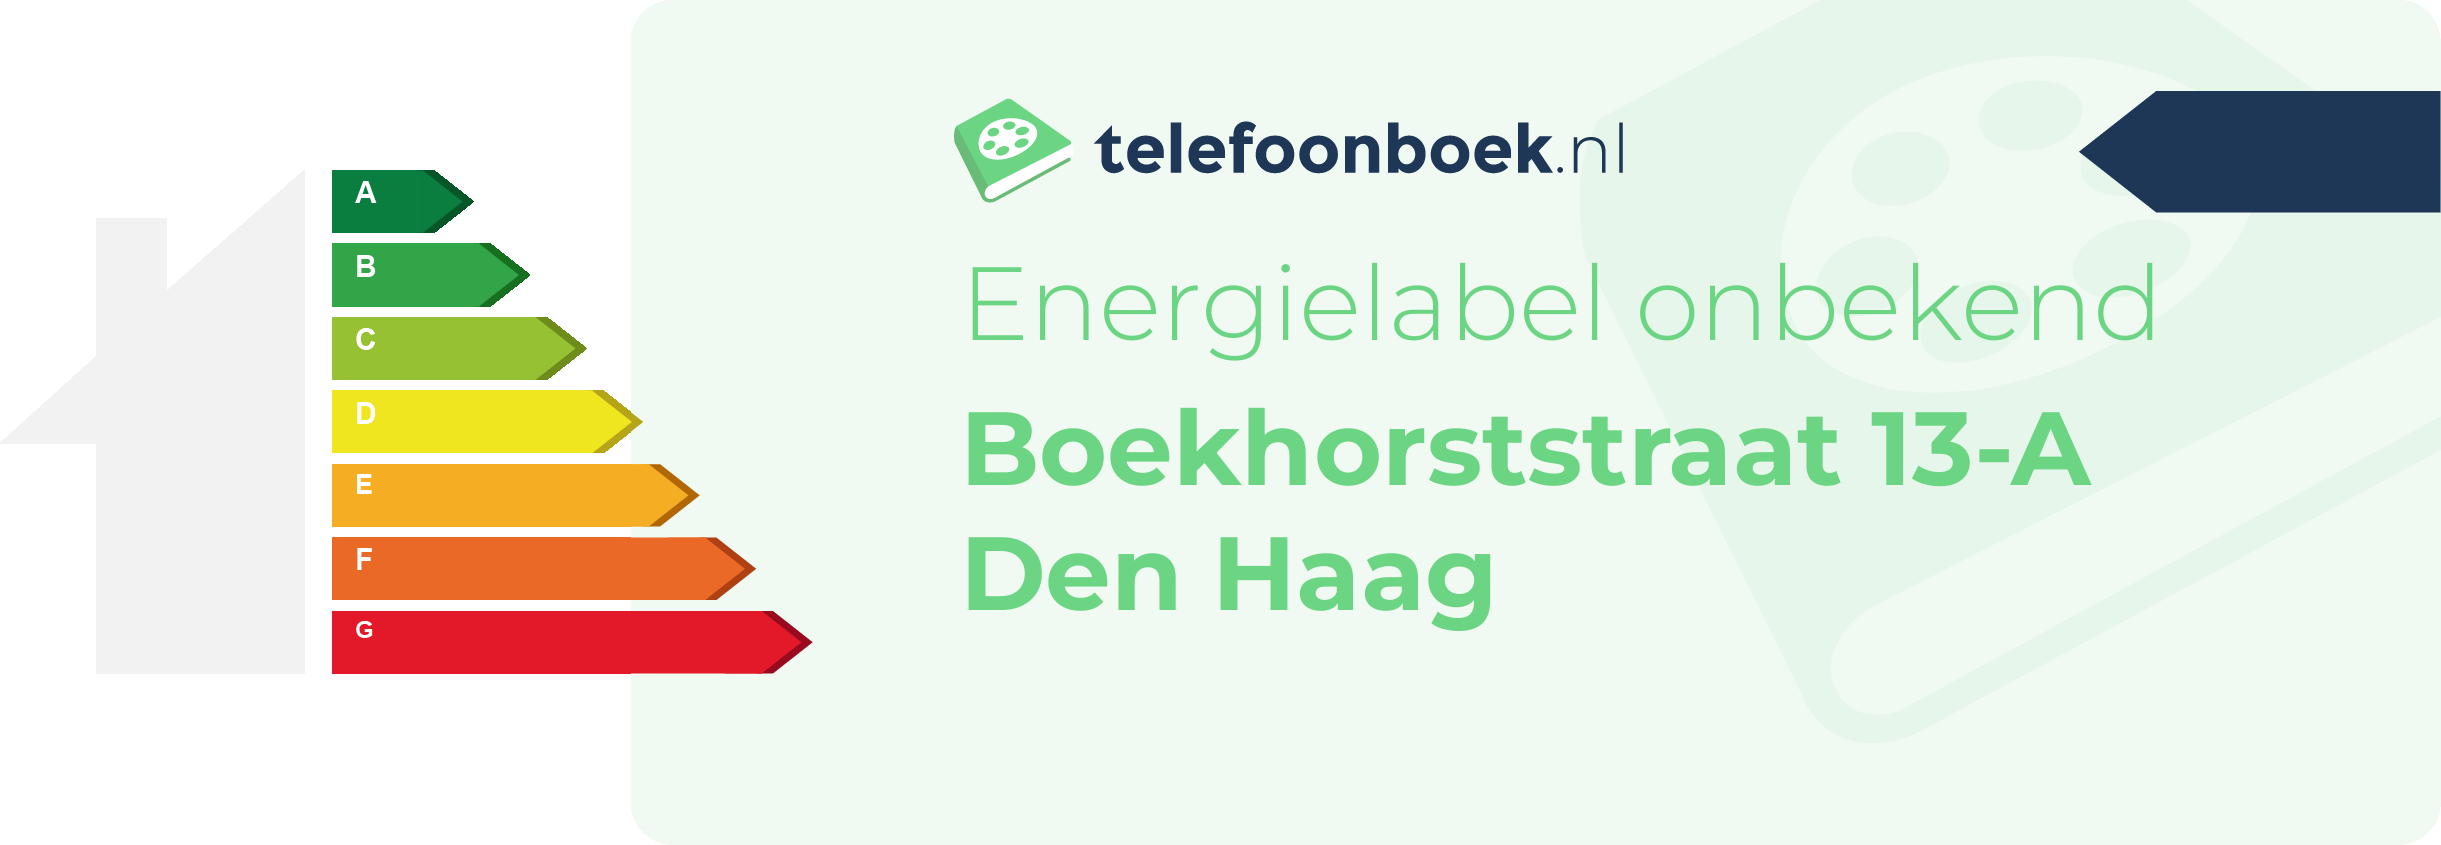 Energielabel Boekhorststraat 13-A Den Haag